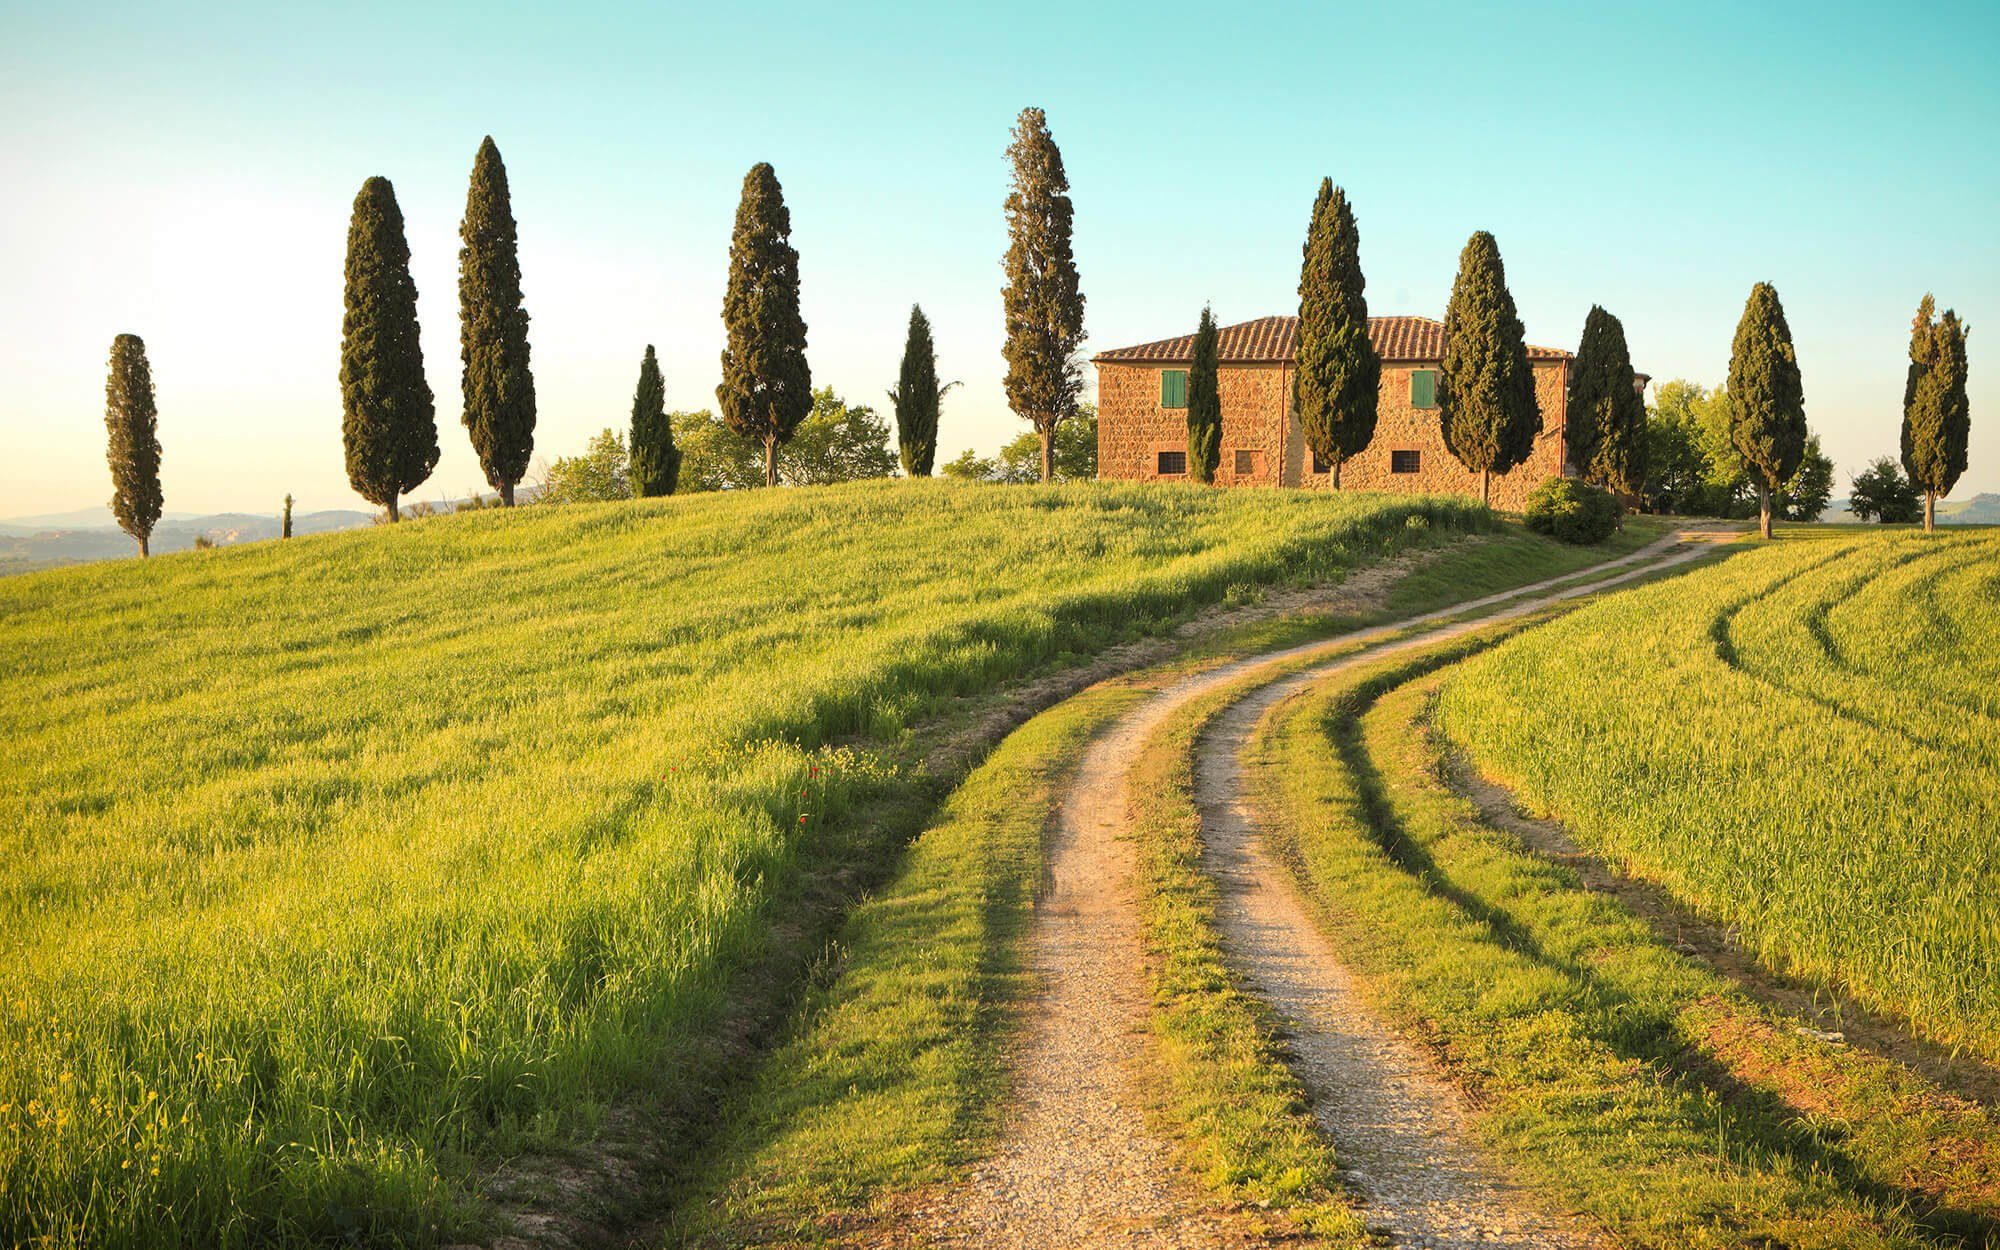 KUNSTLOFT Vliestapete Toscana Summer 4x2.67 m, leicht glänzend, lichtbeständige Design Tapete